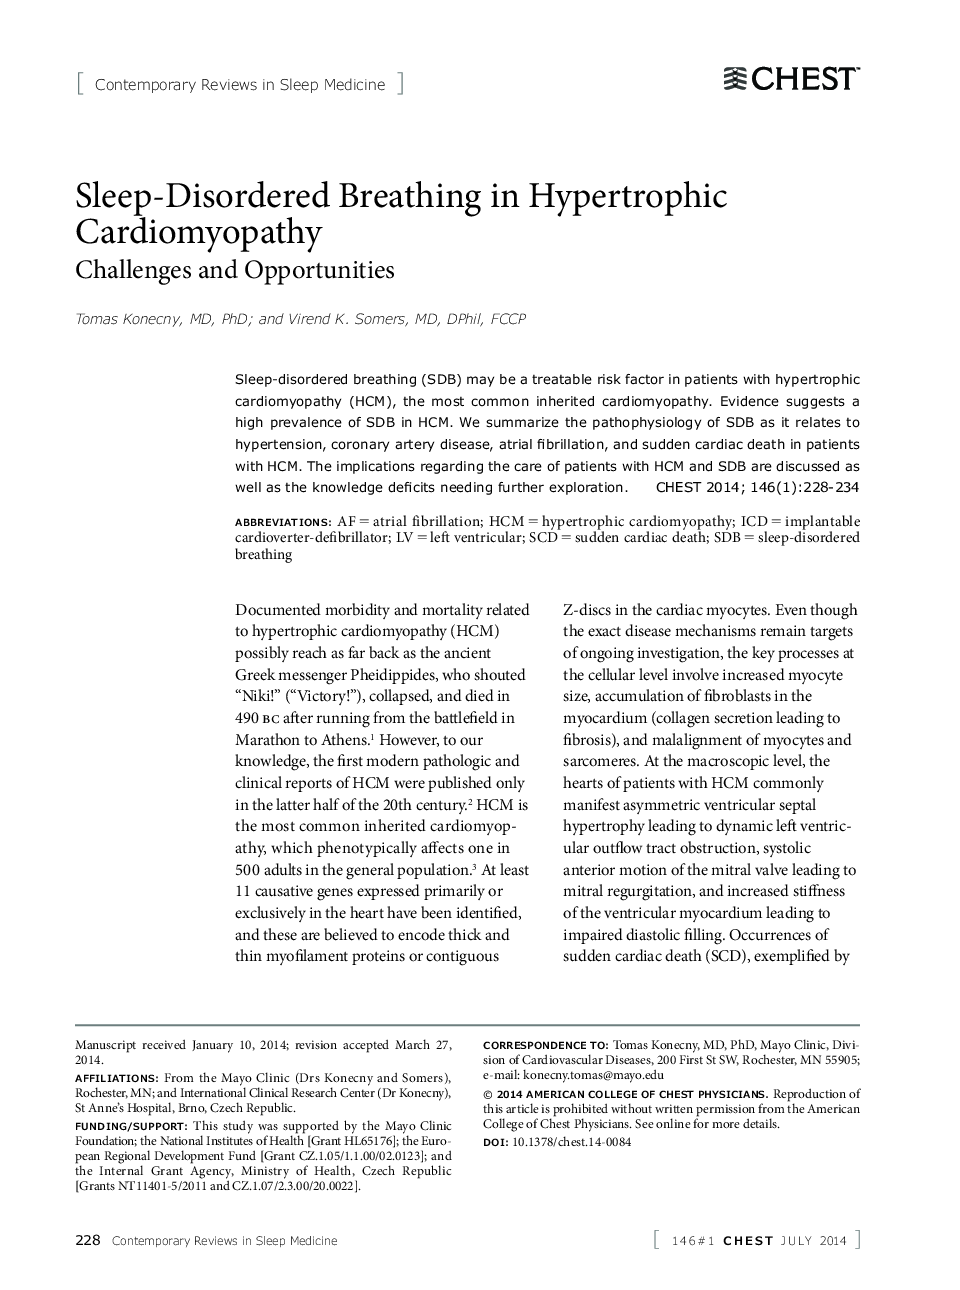 تنفس اختلال خواب در کاردیومیوپاتی هیپرتروفیک 